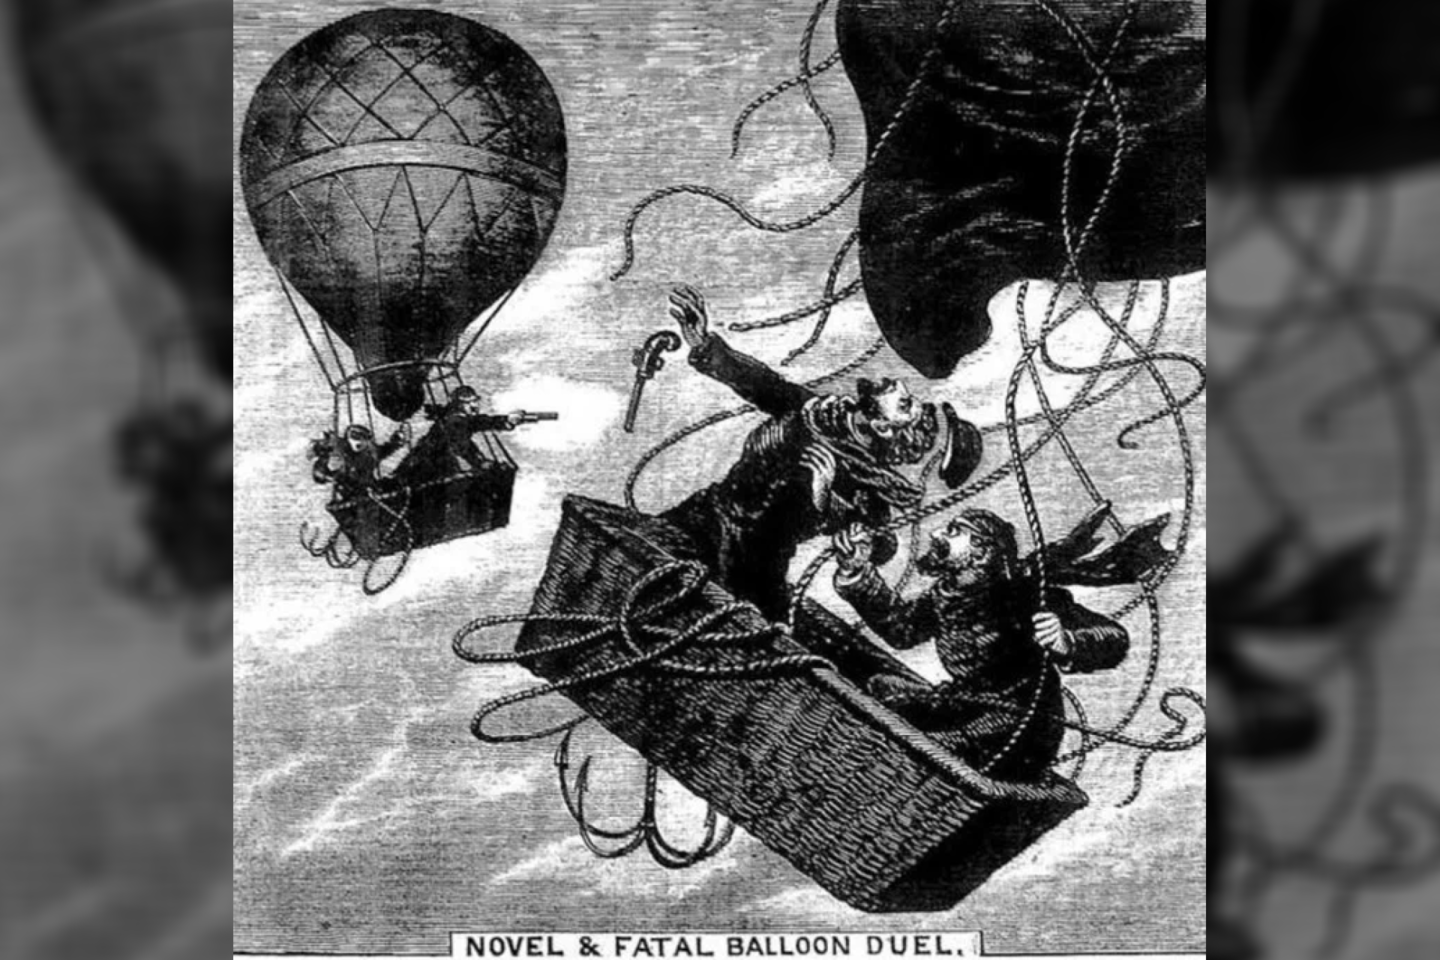 Dvikova buvo neįprasta tuo, kad ji vyko ore, o abu vyrai šaudė į vienas kito oro balionus.<br> Pinterest iliustr.